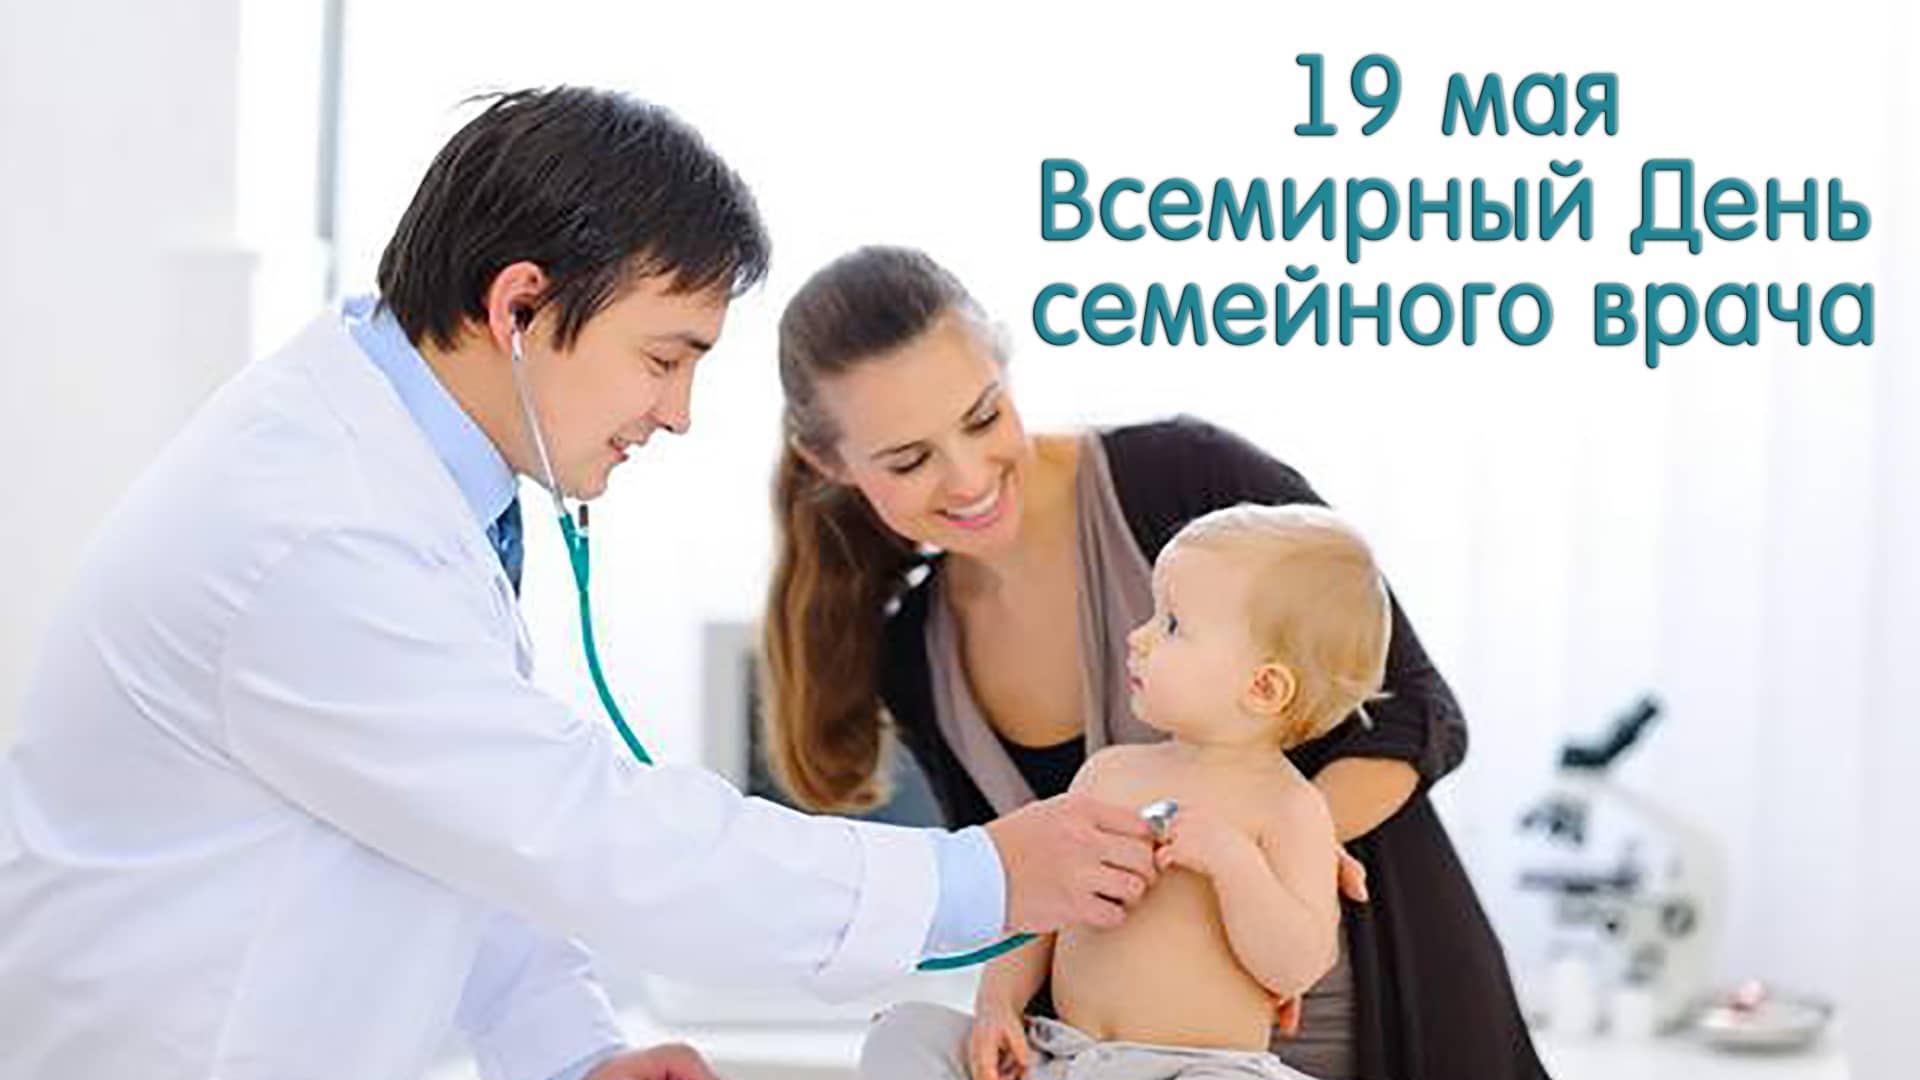 19 мая – Всемирный День семейного врача